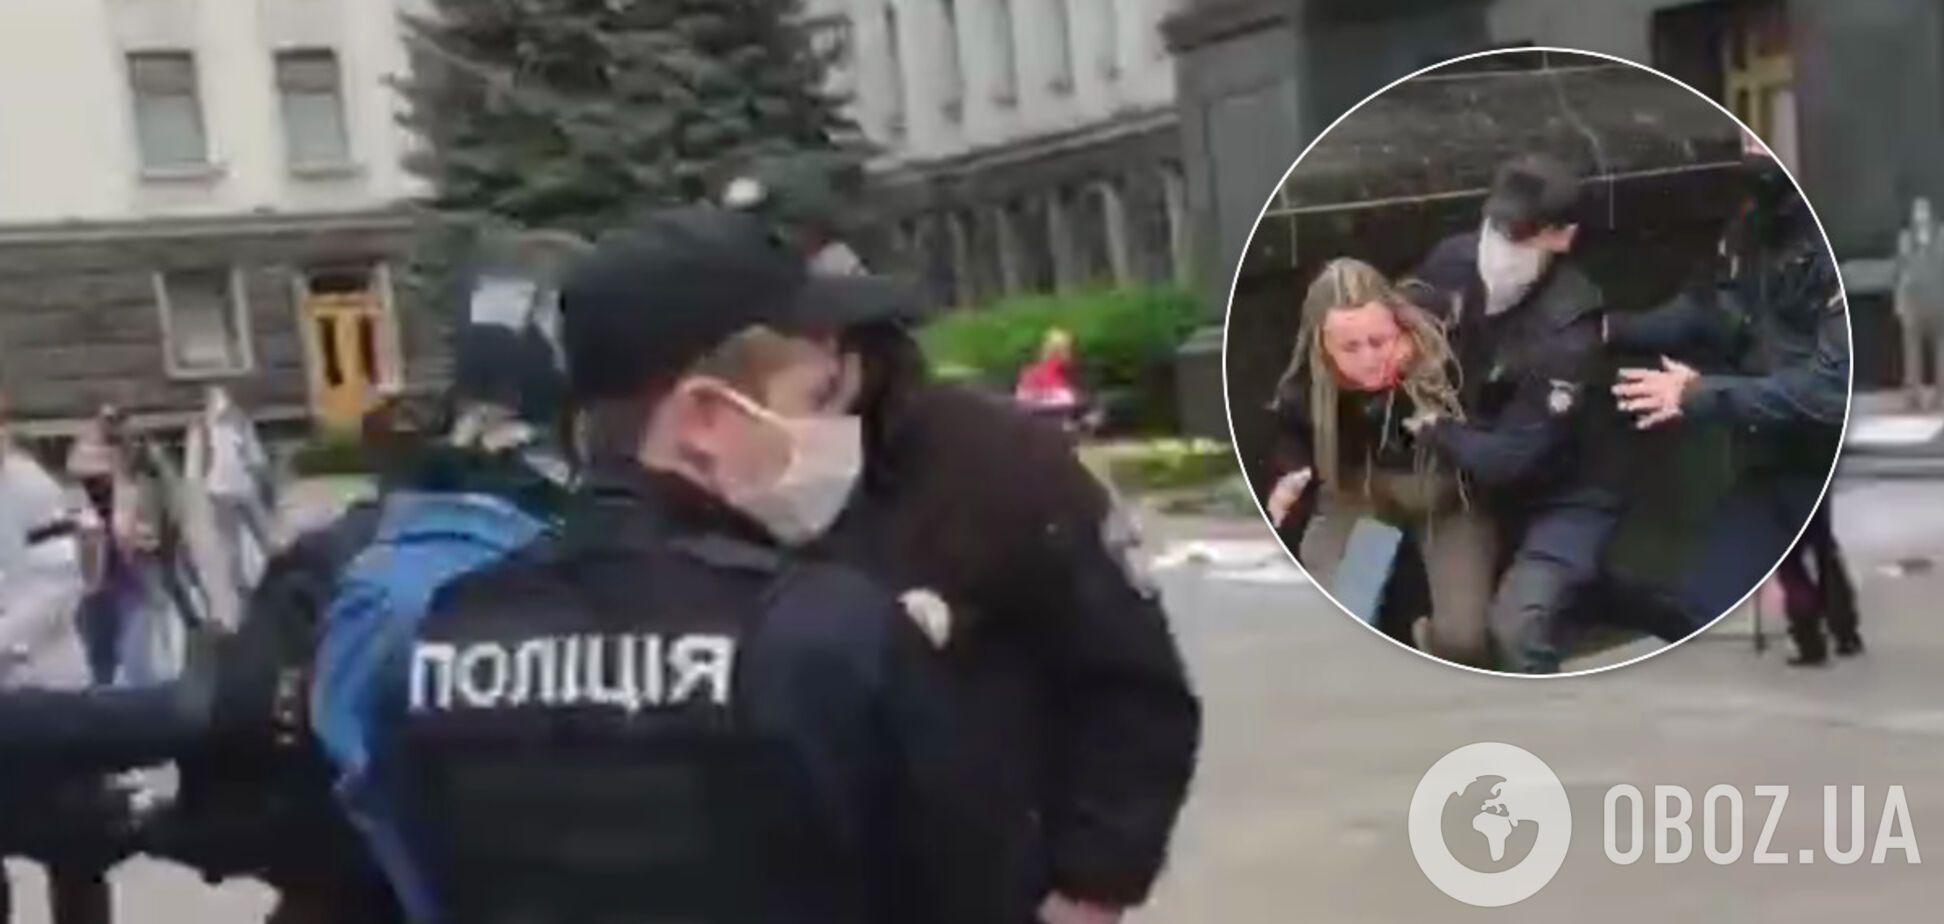 Под Офисом президента в Киеве произошли столкновения. Фото и видео